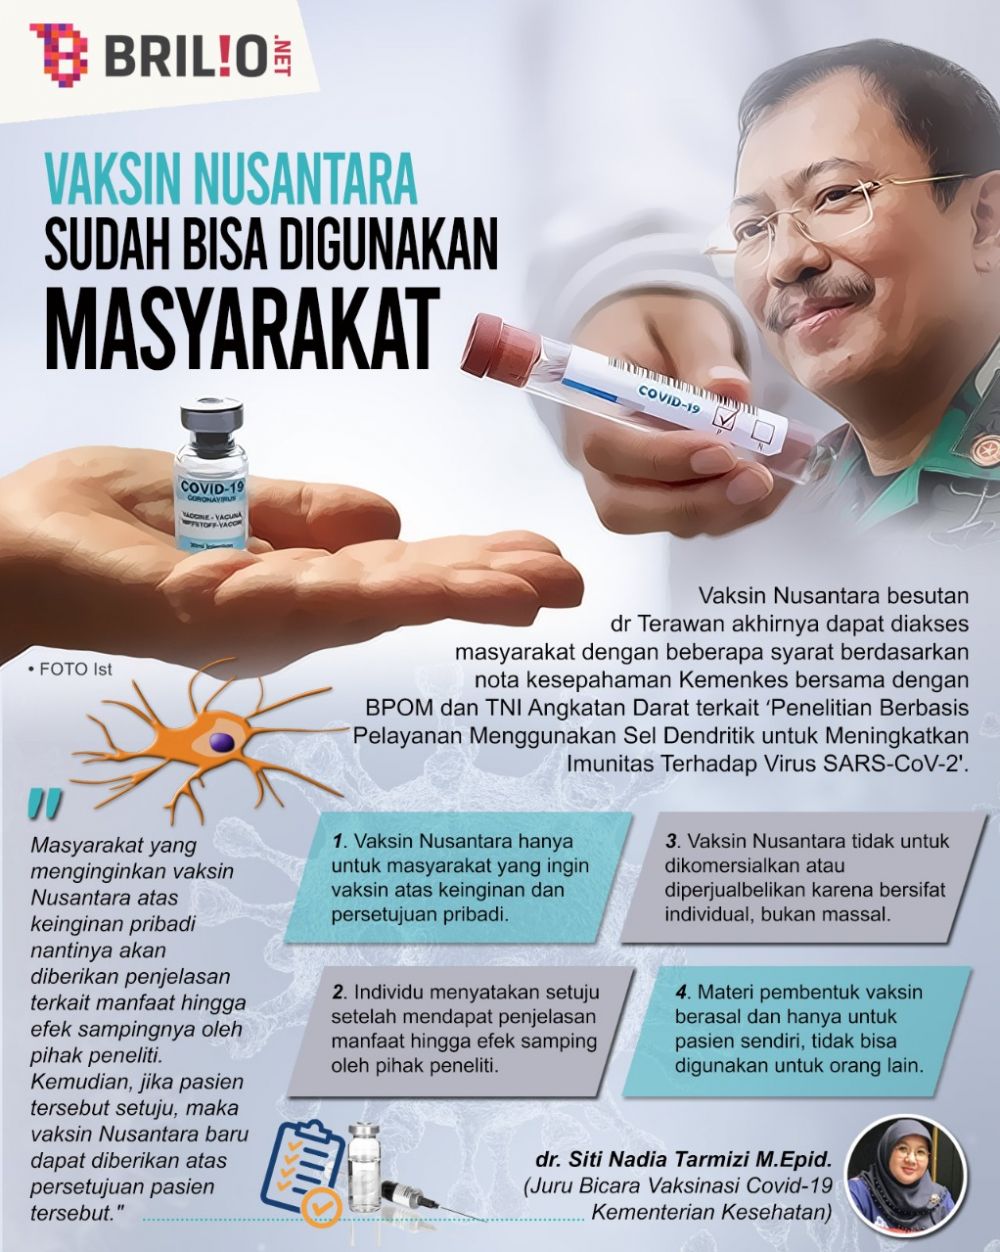 Vaksin Nusantara bisa digunakan dengan syarat terbatas, ini faktanya